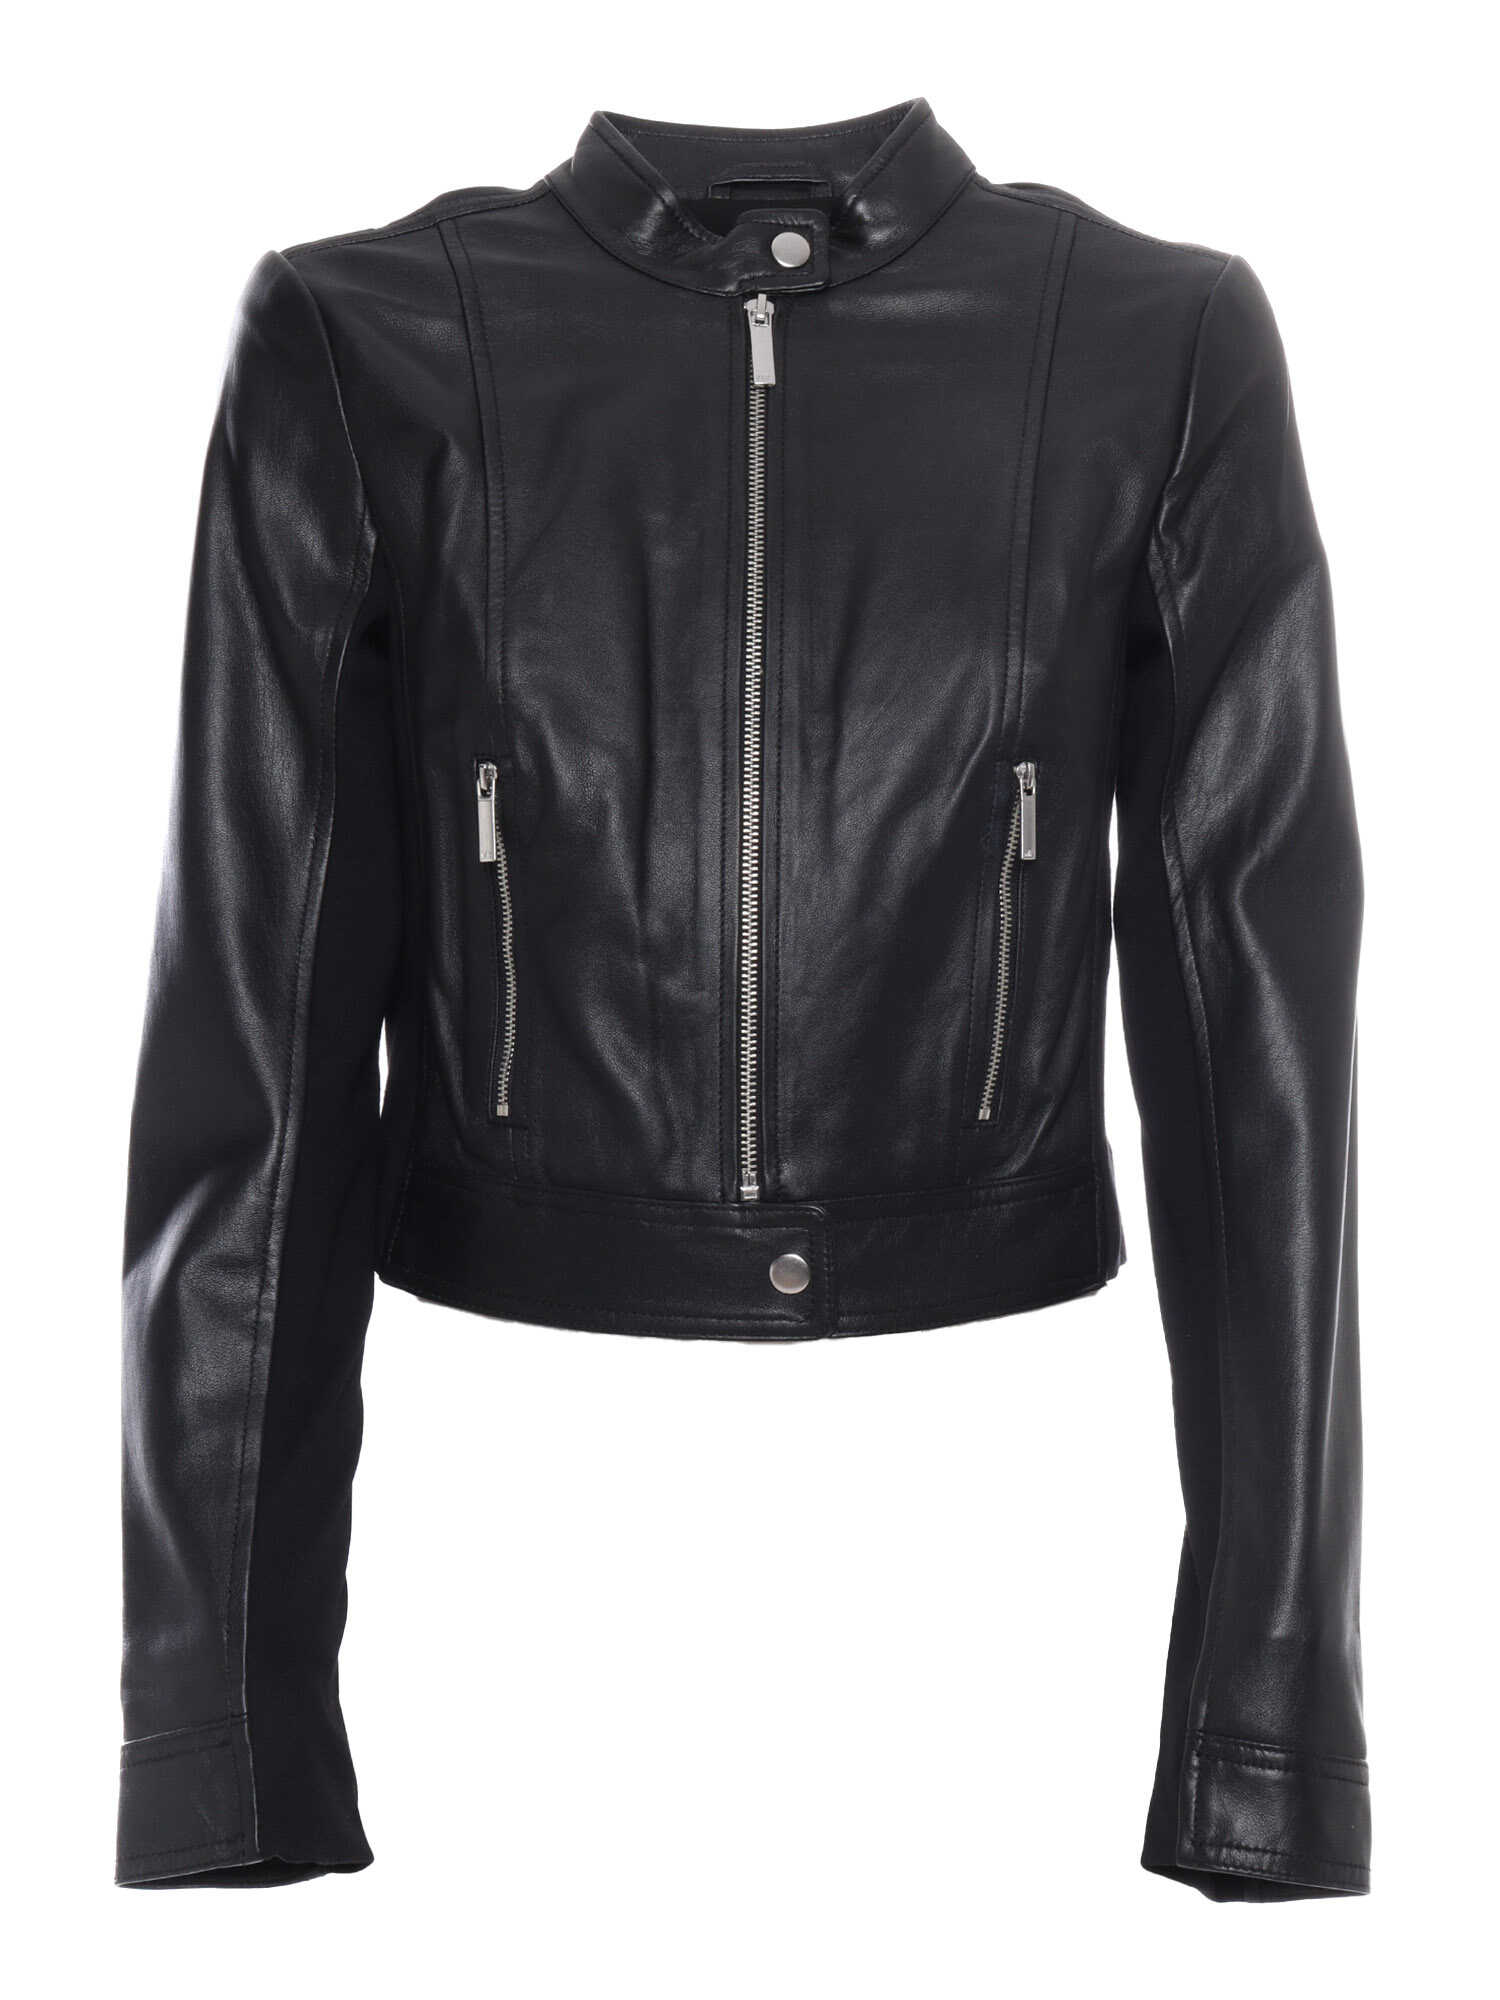 Michael Kors Leather jacket Black